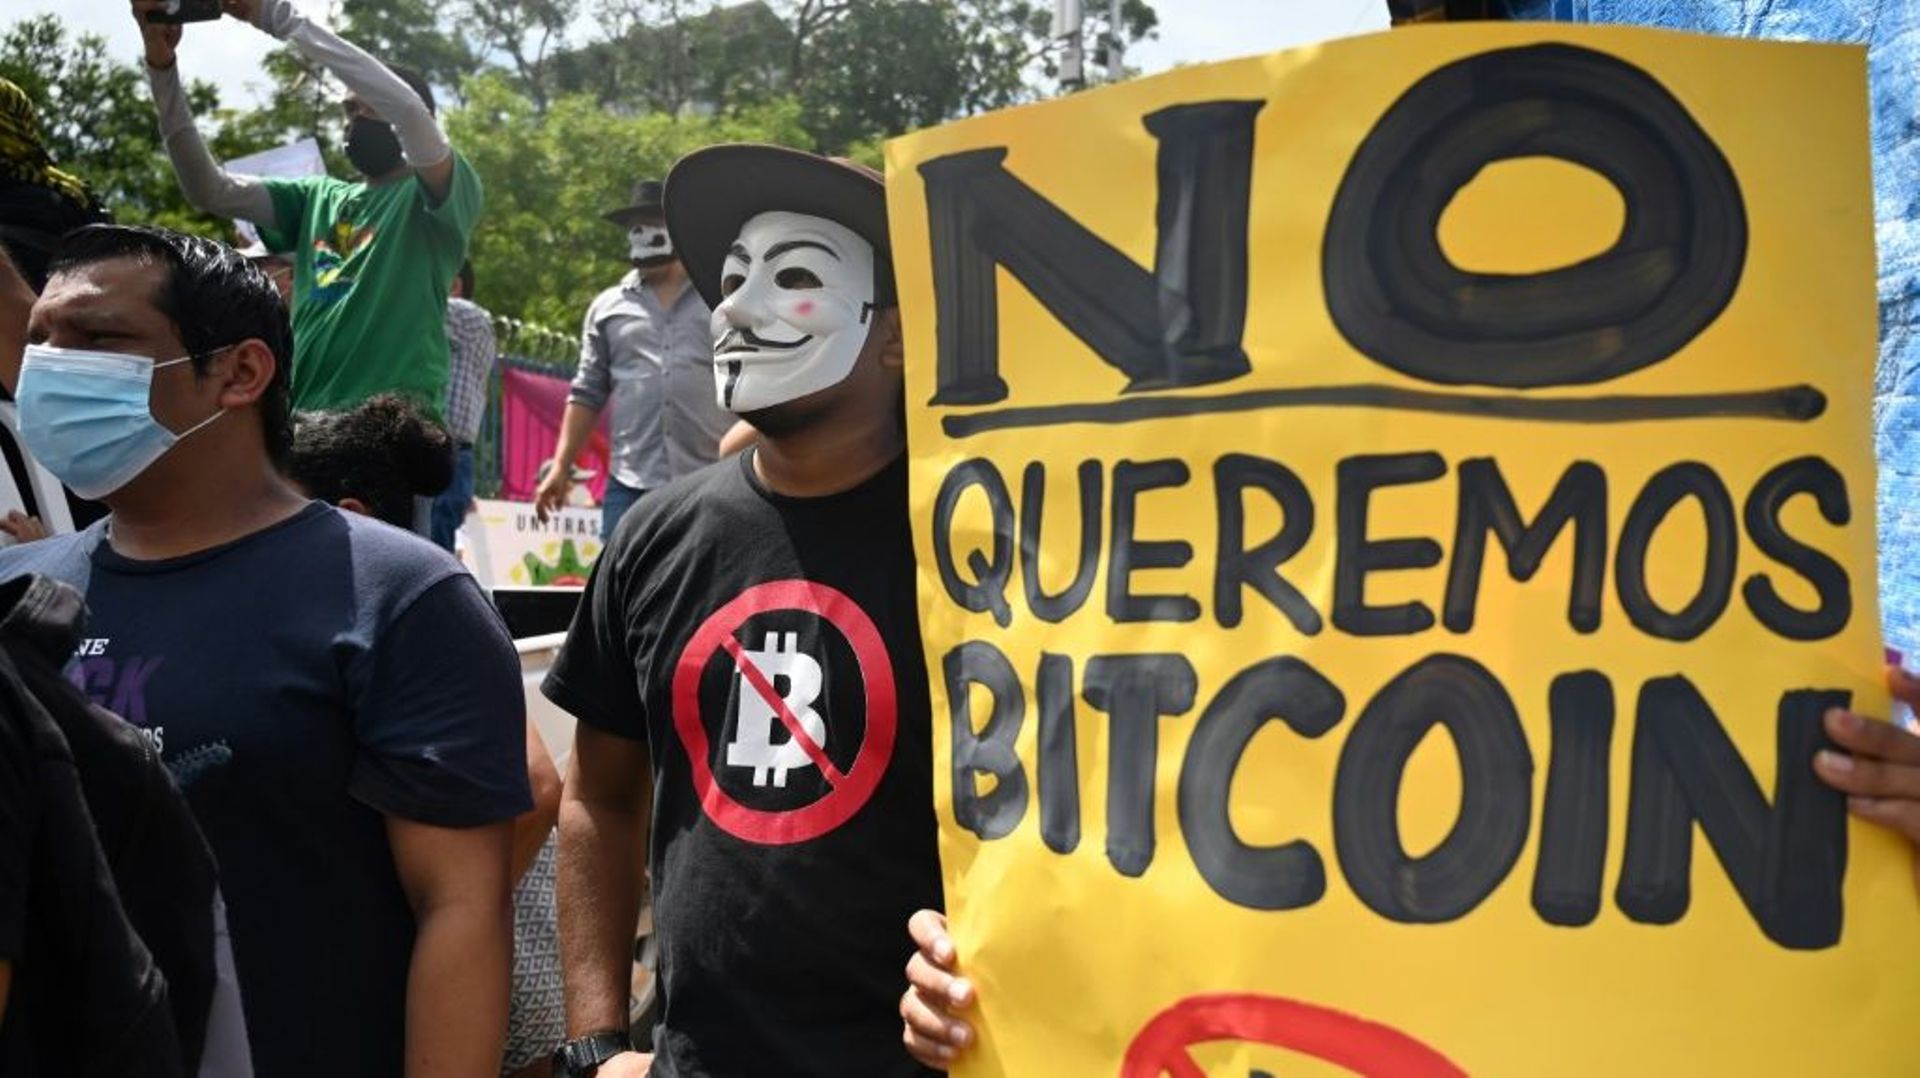 Des manifestants opposés à l'autorisation du bitcoin comme monnaie légale au Salvador, le 1er septembre 2021 à San Salvador